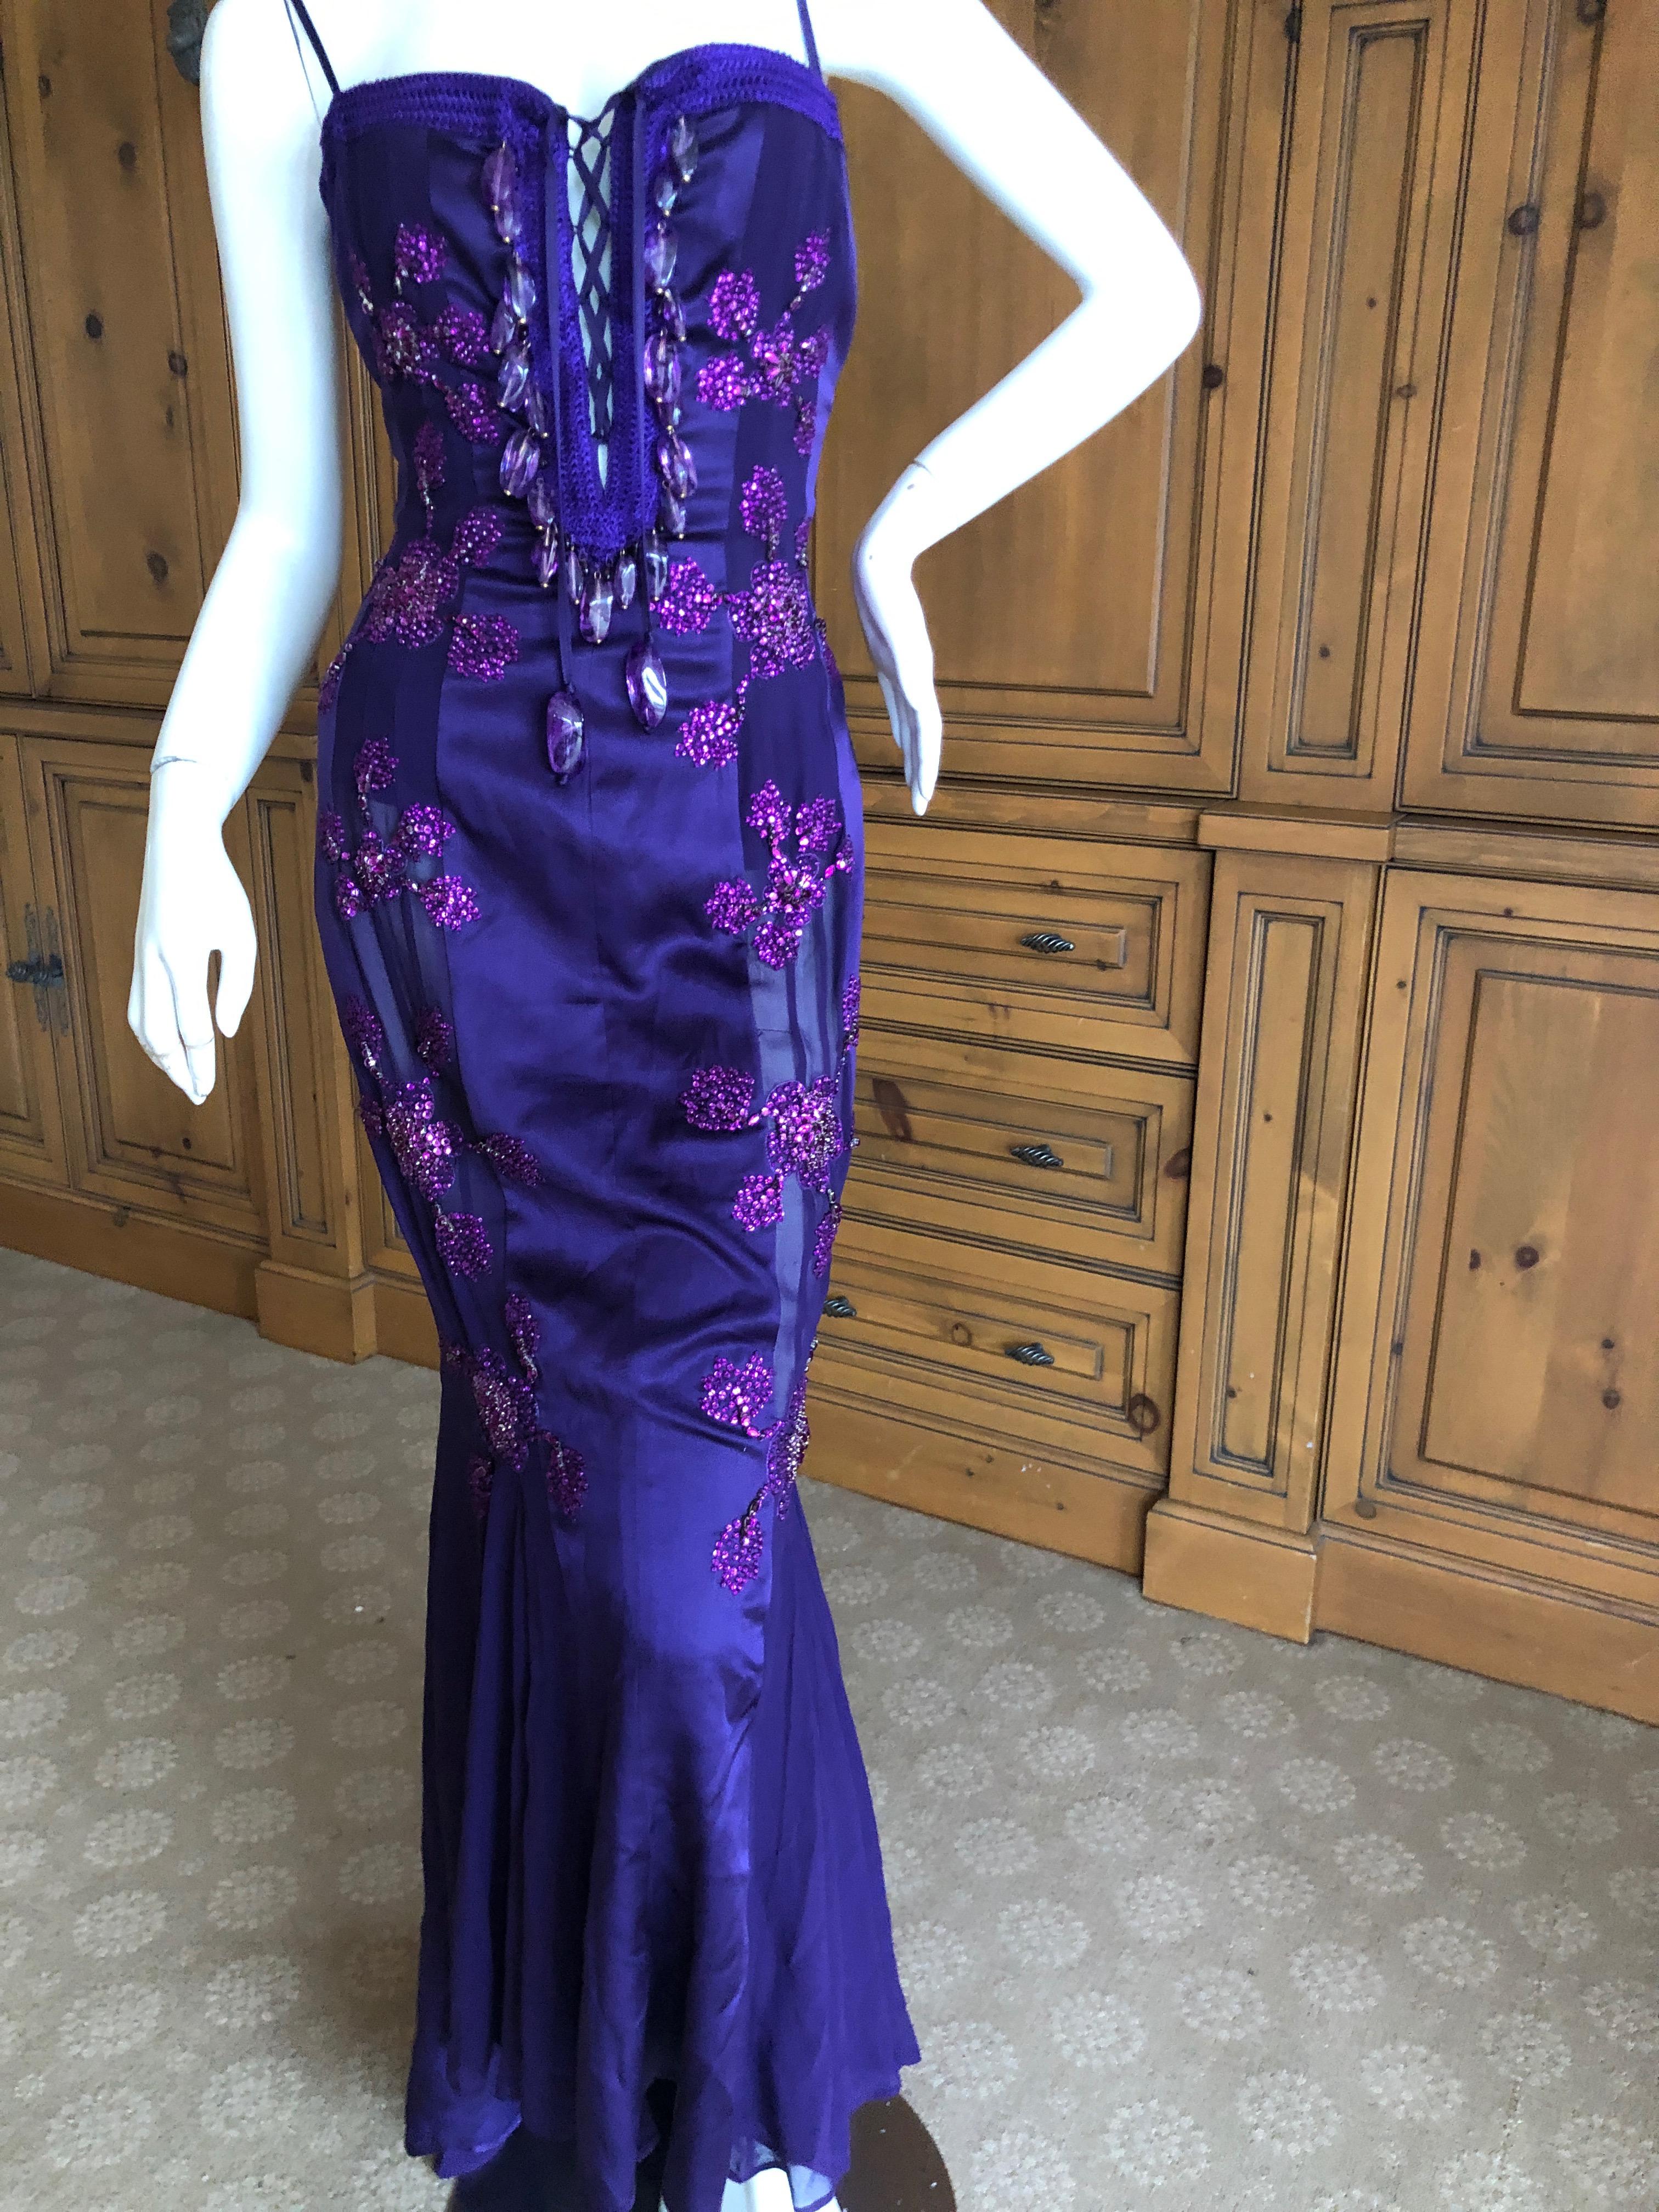 Purple Emanuel Ungaro Amethyst Embellished Vintage Silk Evening Dress by Peter Dundas For Sale